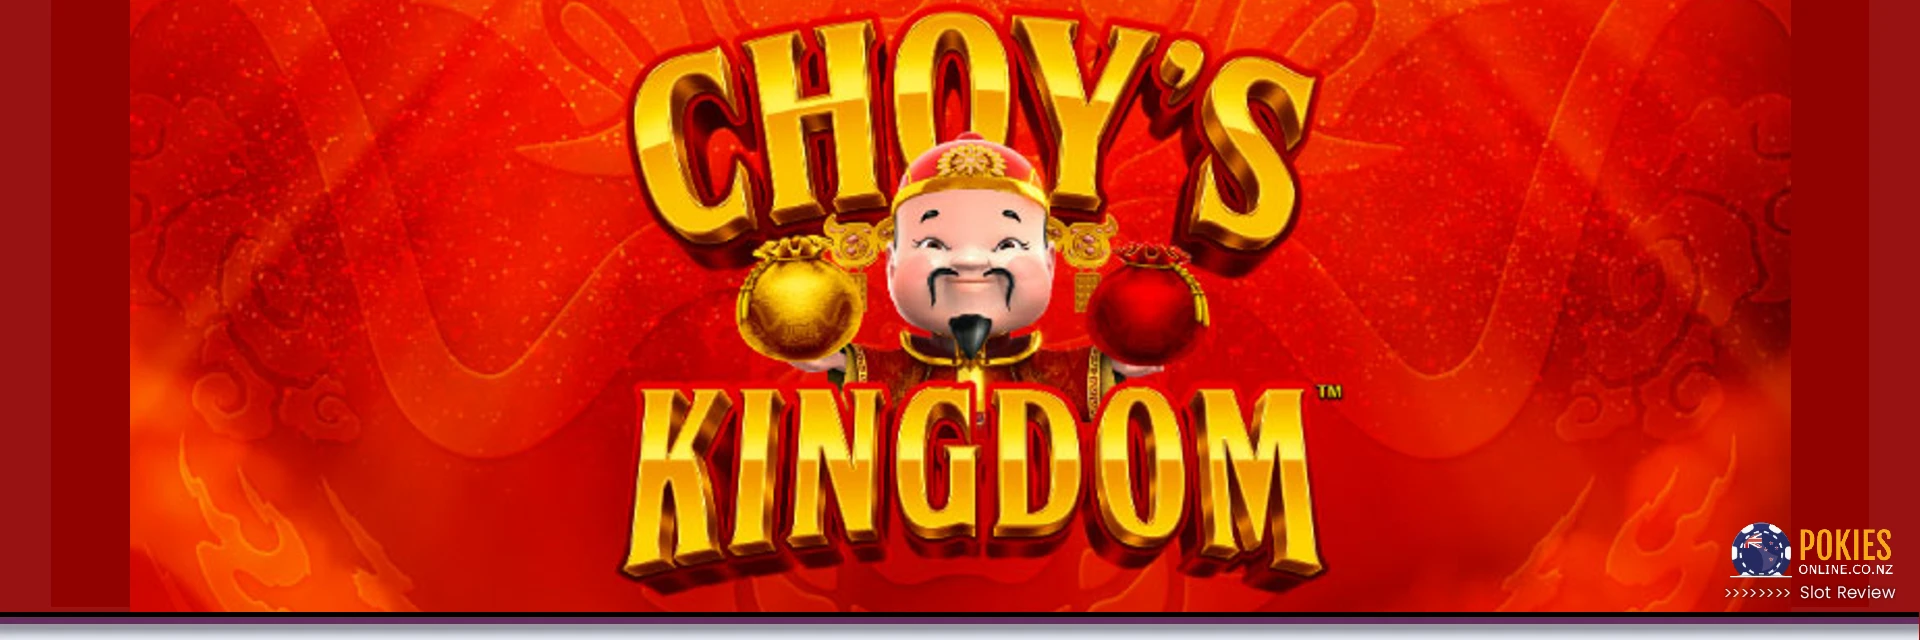 Choy's Kingdom Pokie